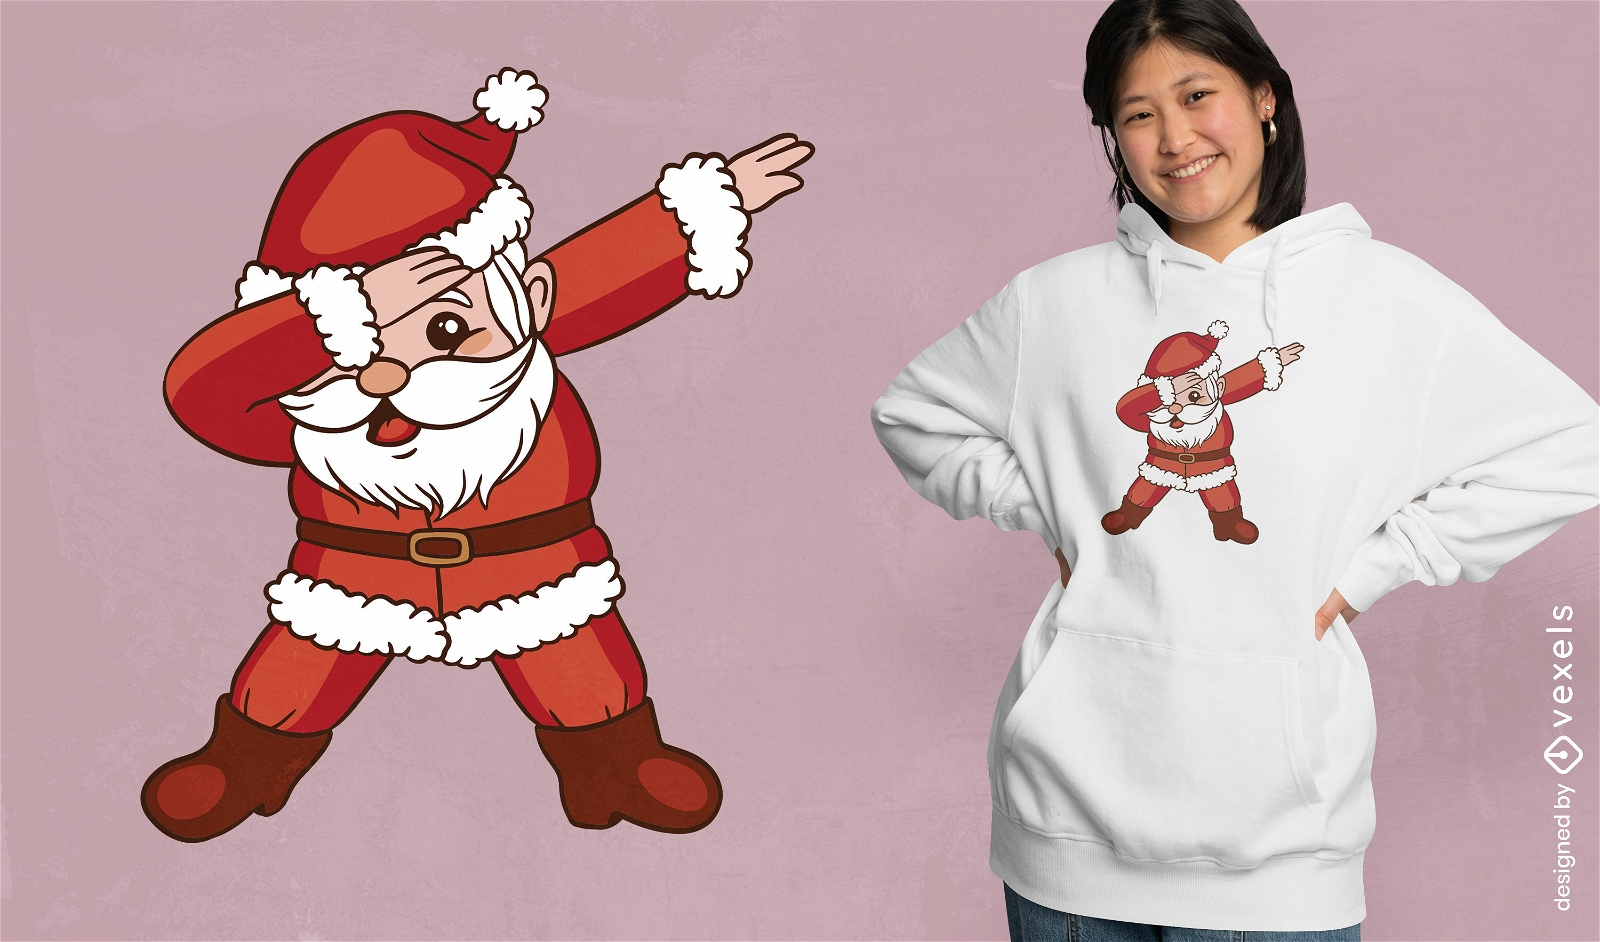 Weihnachtsmann-T-Shirt-Design mit Klecksgeste